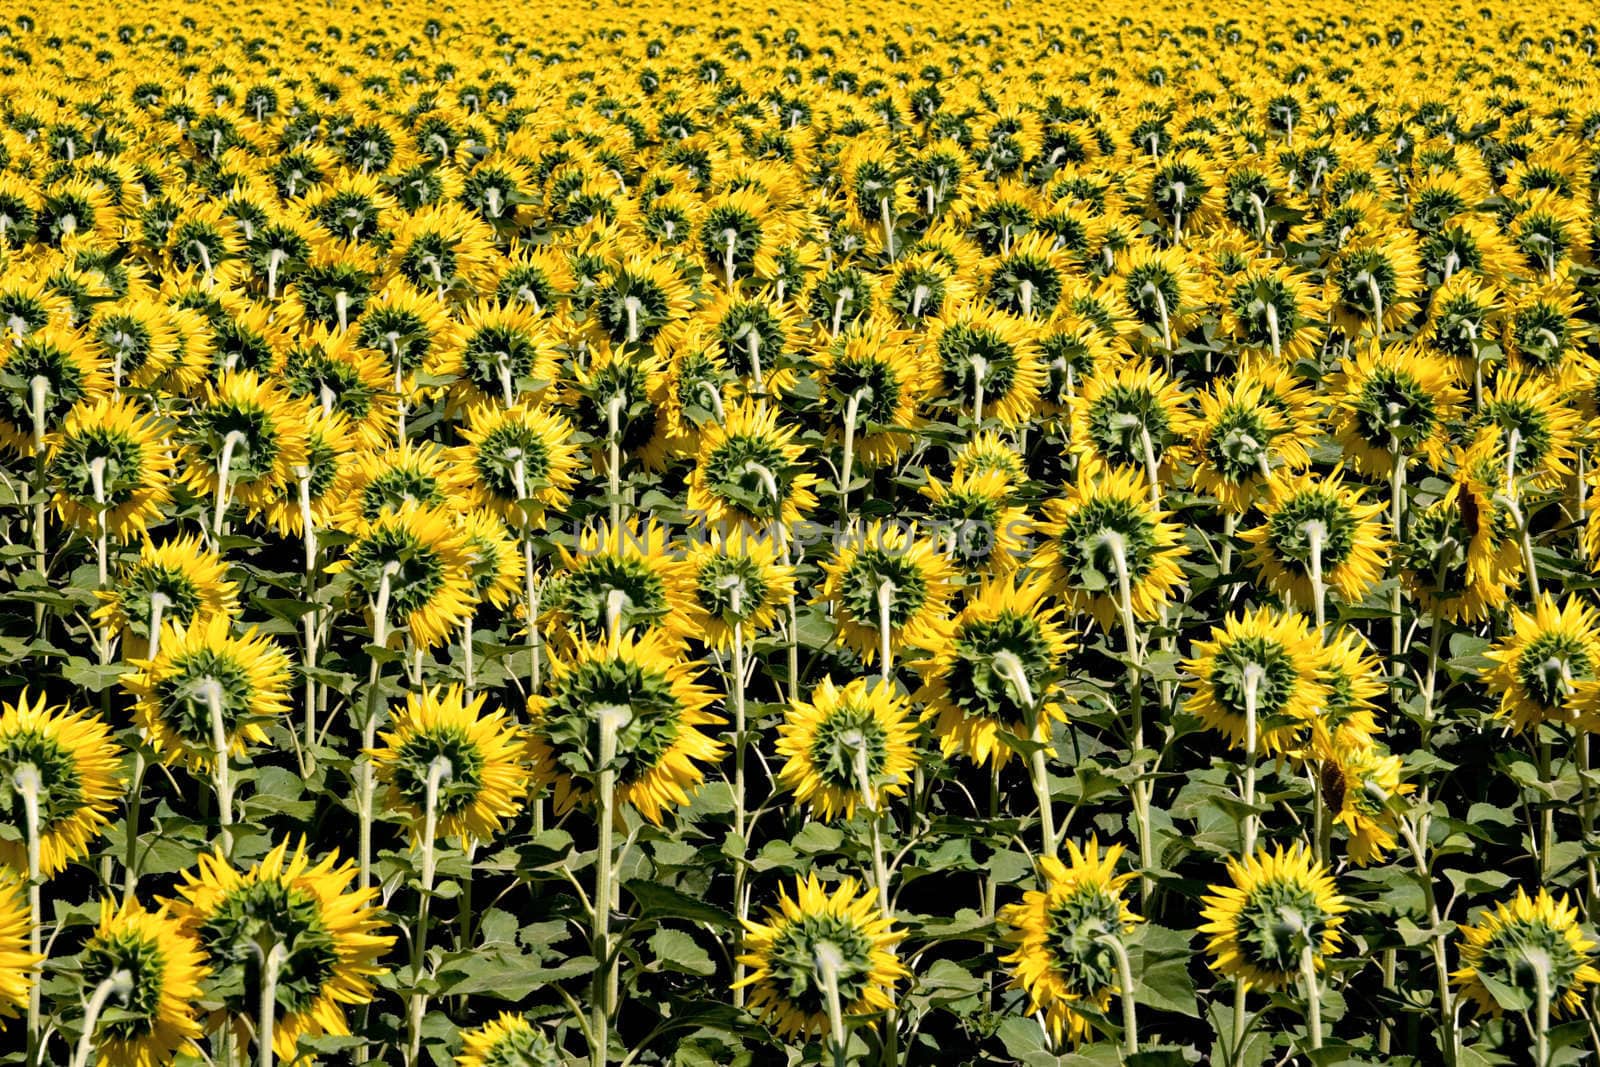 Field of Sunflowers by ajn